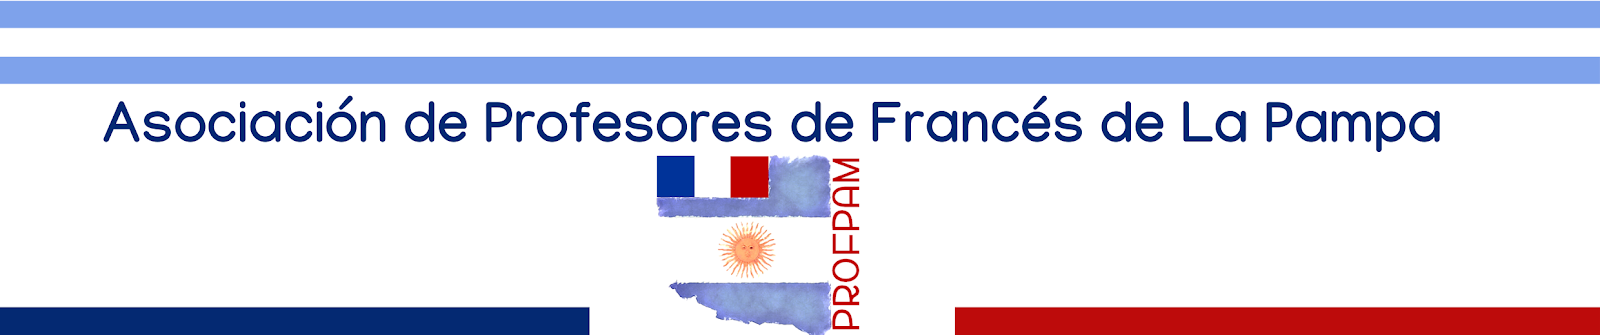 Asociación de Profesores de Francés de La Pampa